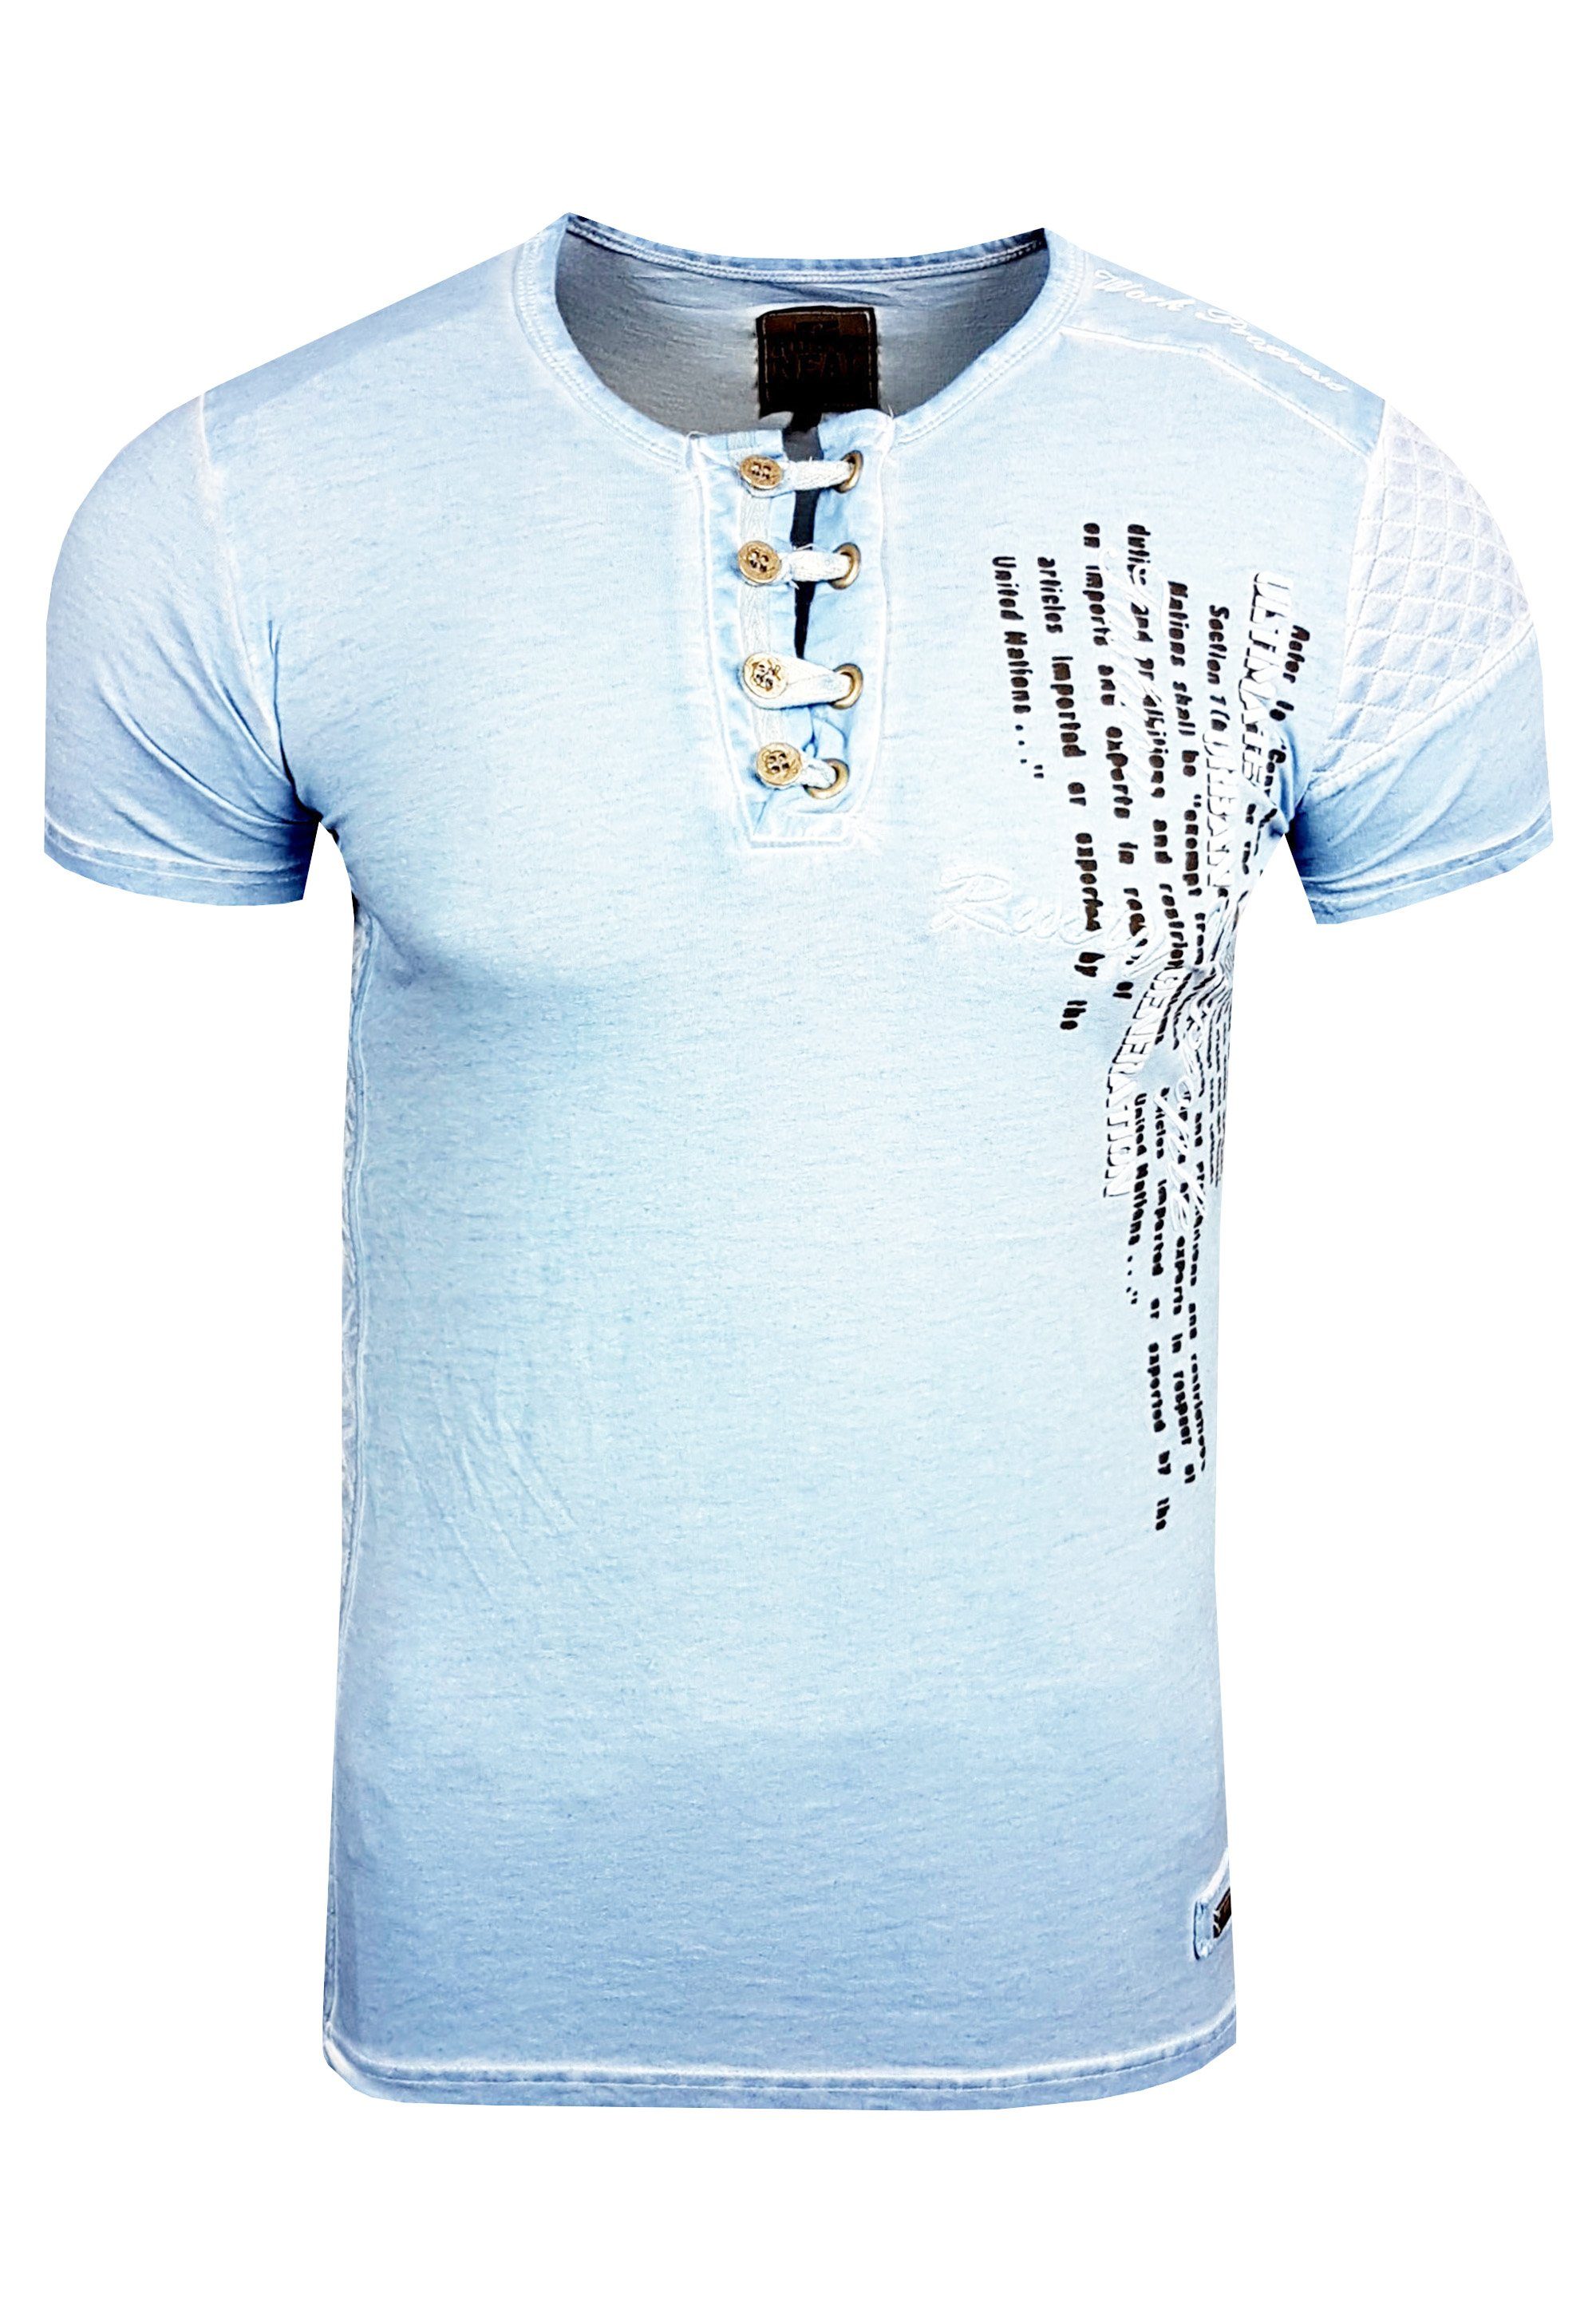 Rusty T-Shirt mit Knopfleiste schicker Neal hellblau